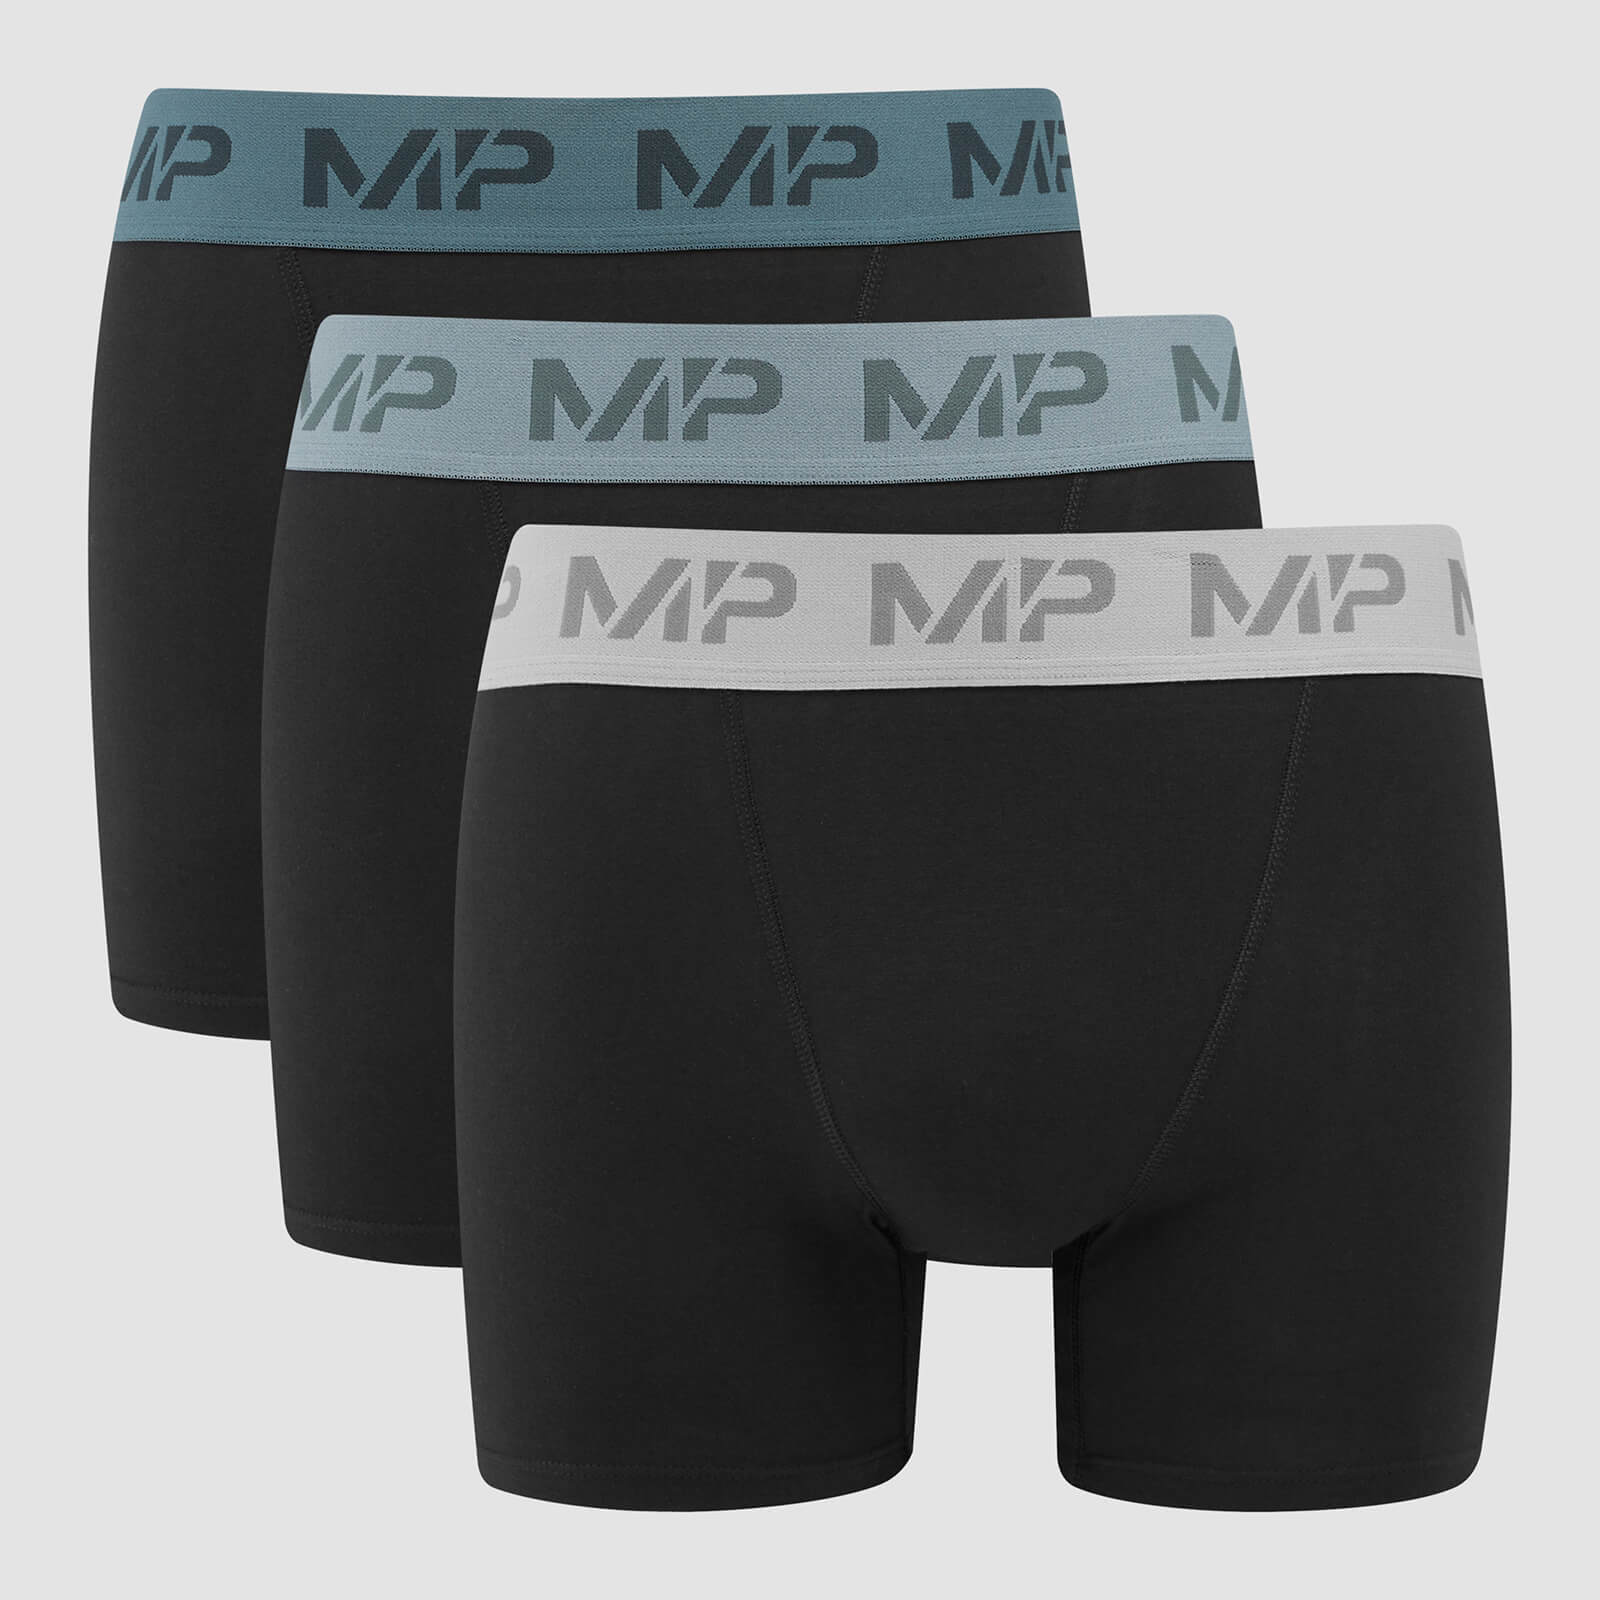 Boxers à ceinture colorée MP pour hommes (lot de 3) – Noir/Bleu fumé/Bleu galet/Gris foncé - S